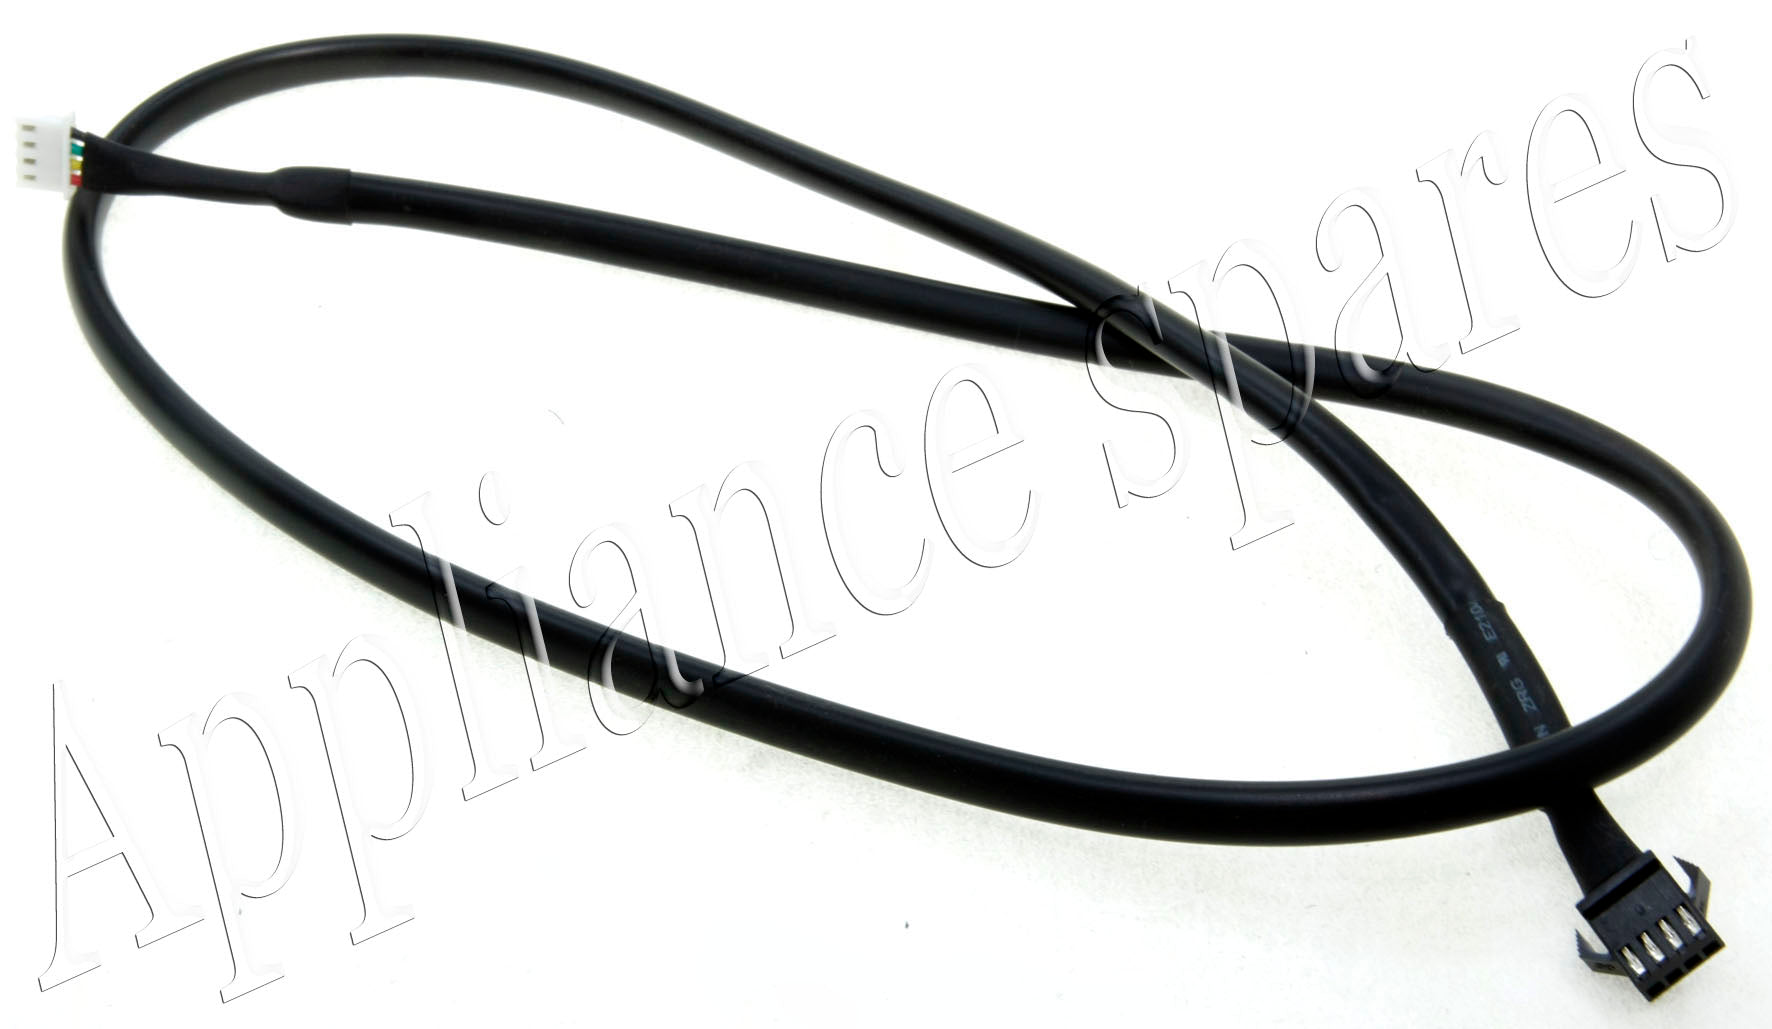 Elettromec Extractor Pc Board Cable